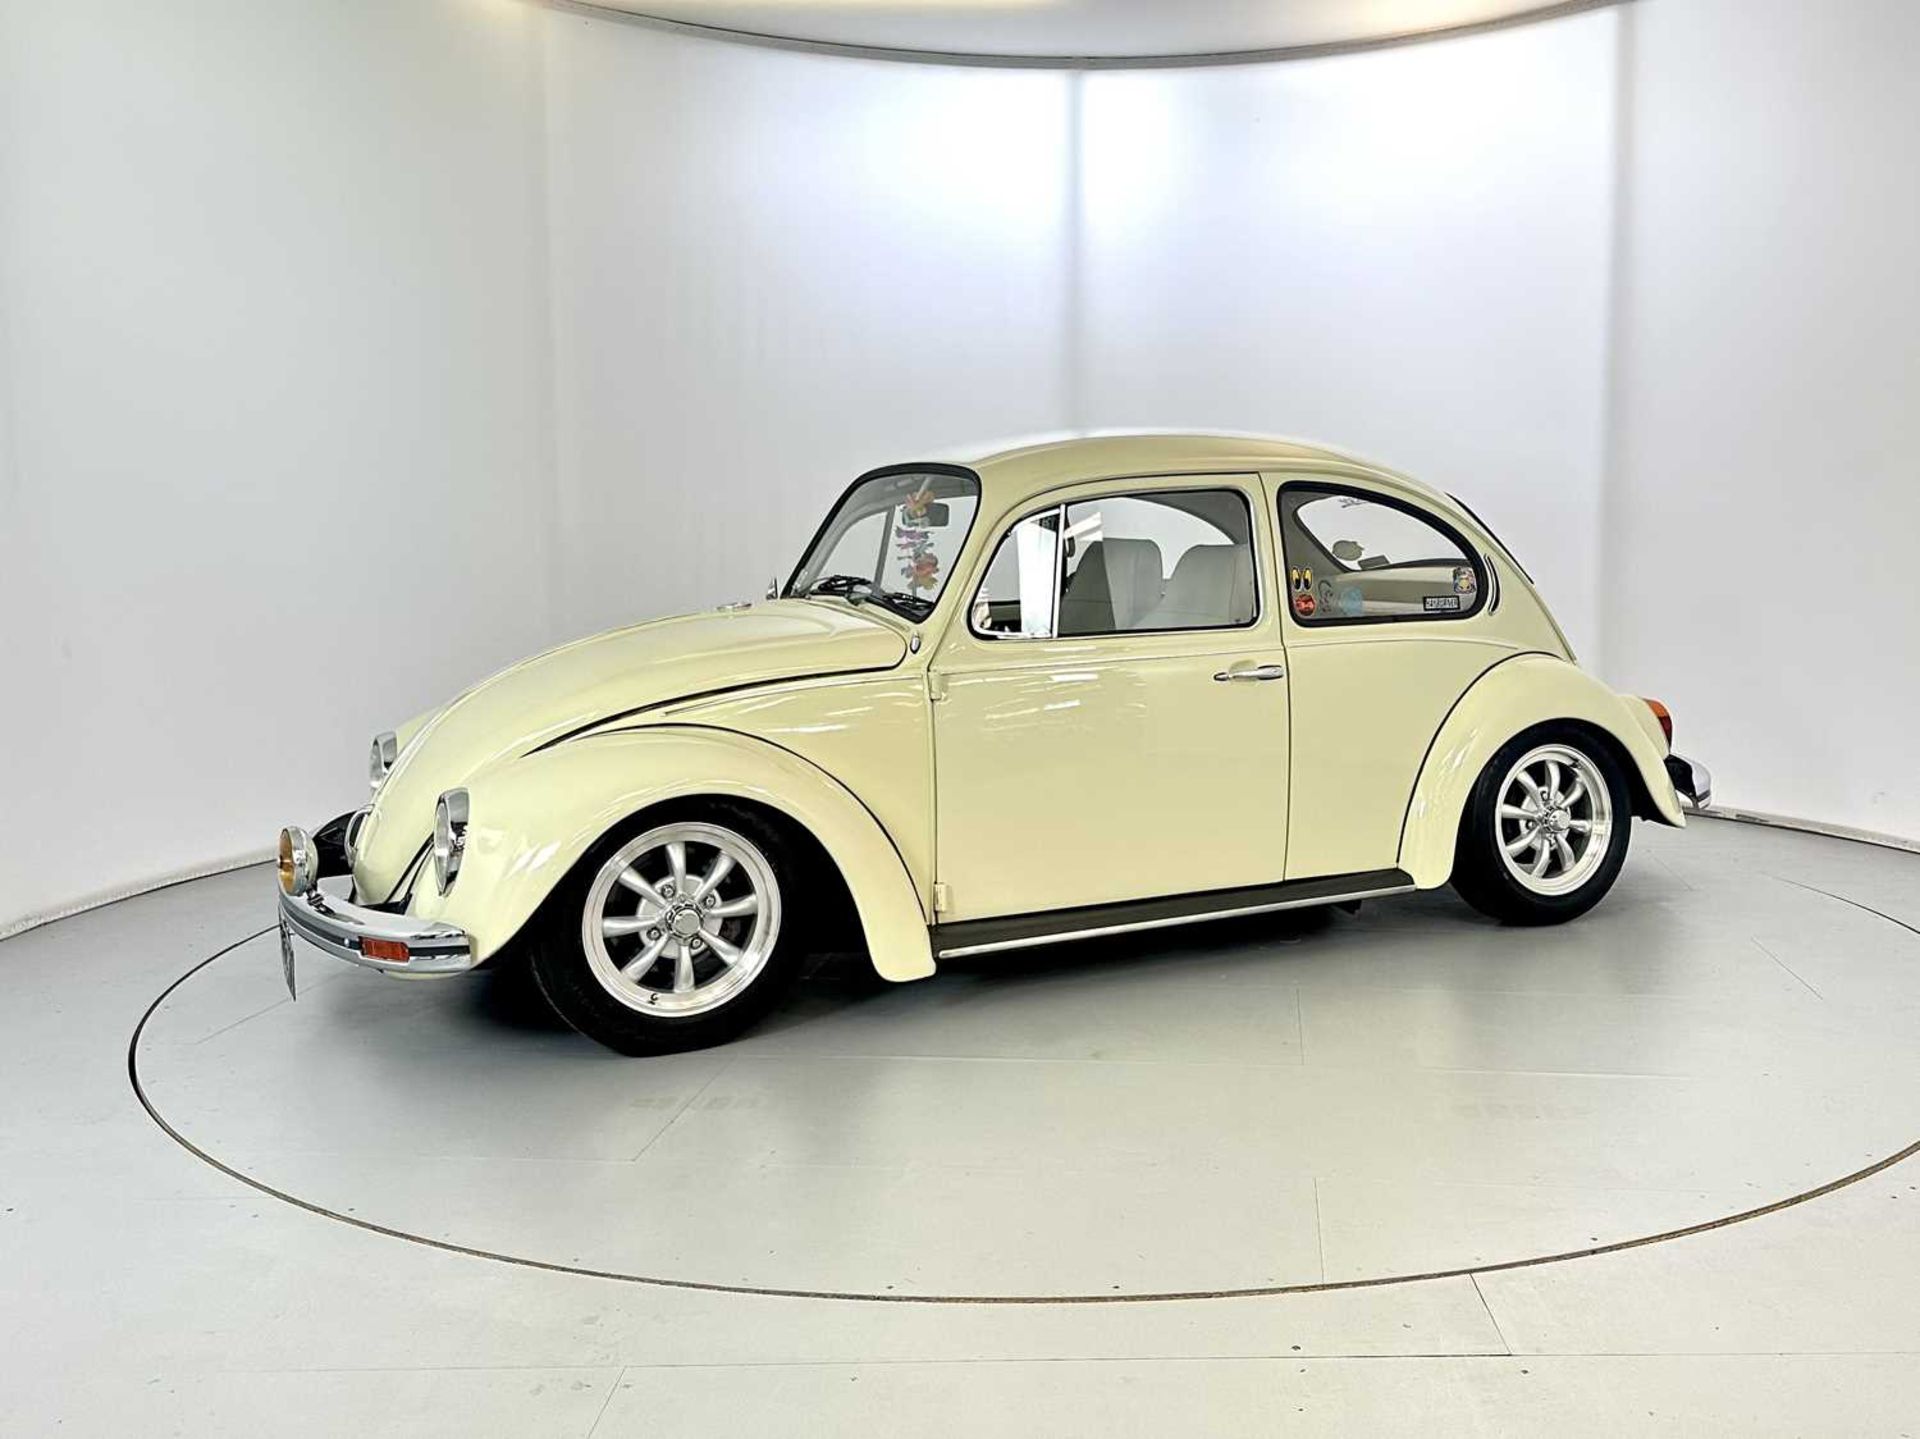 1971 Volkswagen Beetle - Image 4 of 30